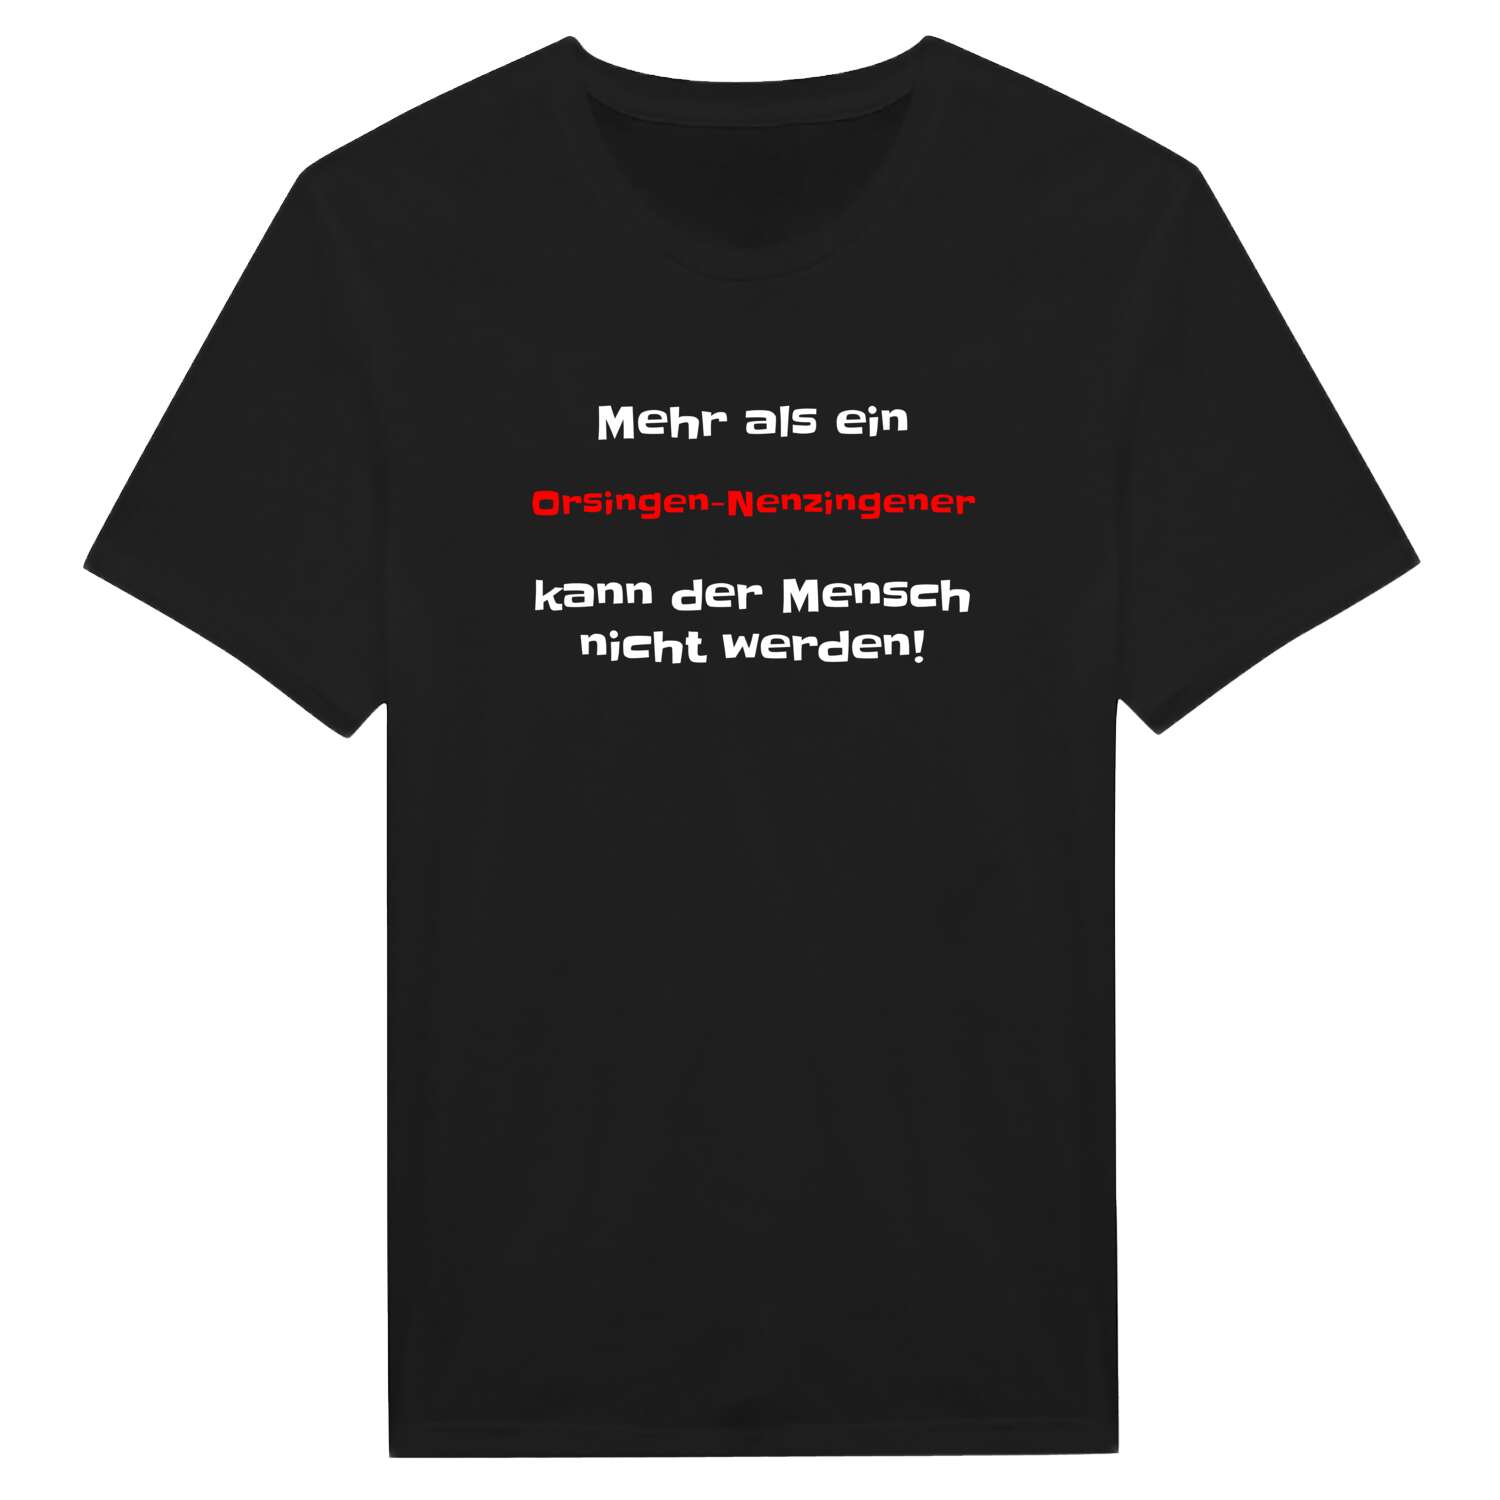 Orsingen-Nenzingen T-Shirt »Mehr als ein«